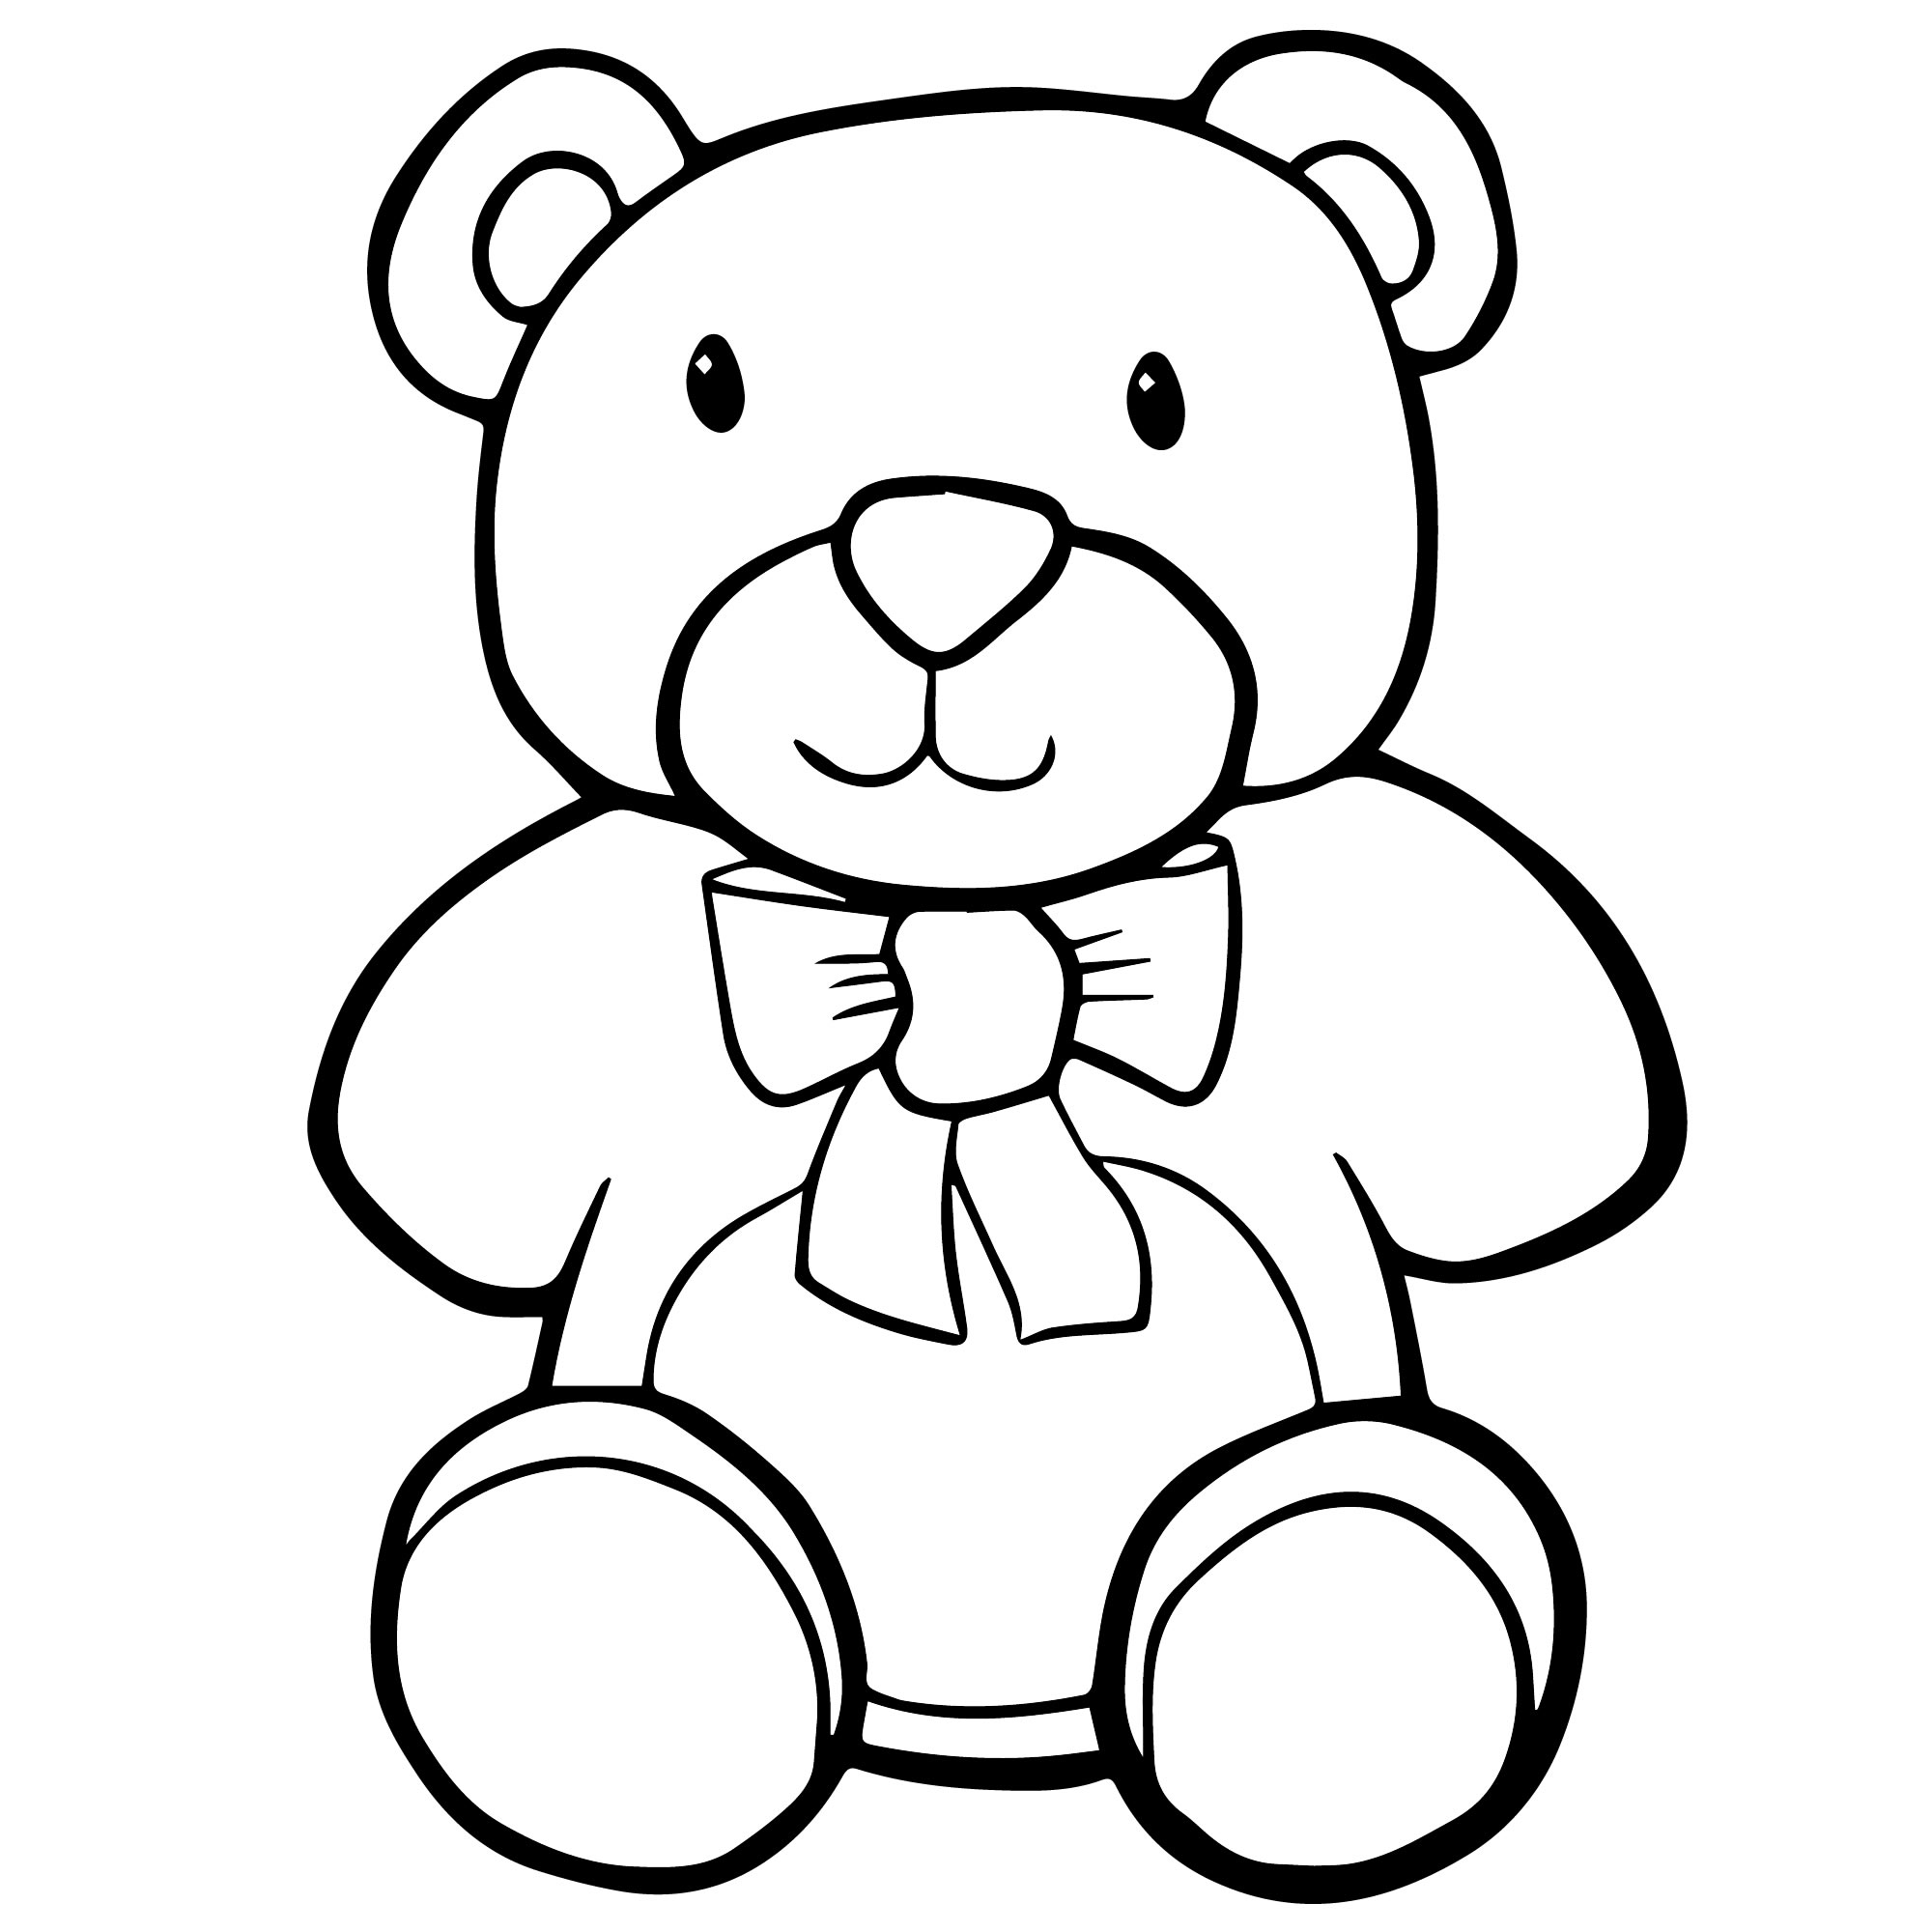 Teddy bear #6